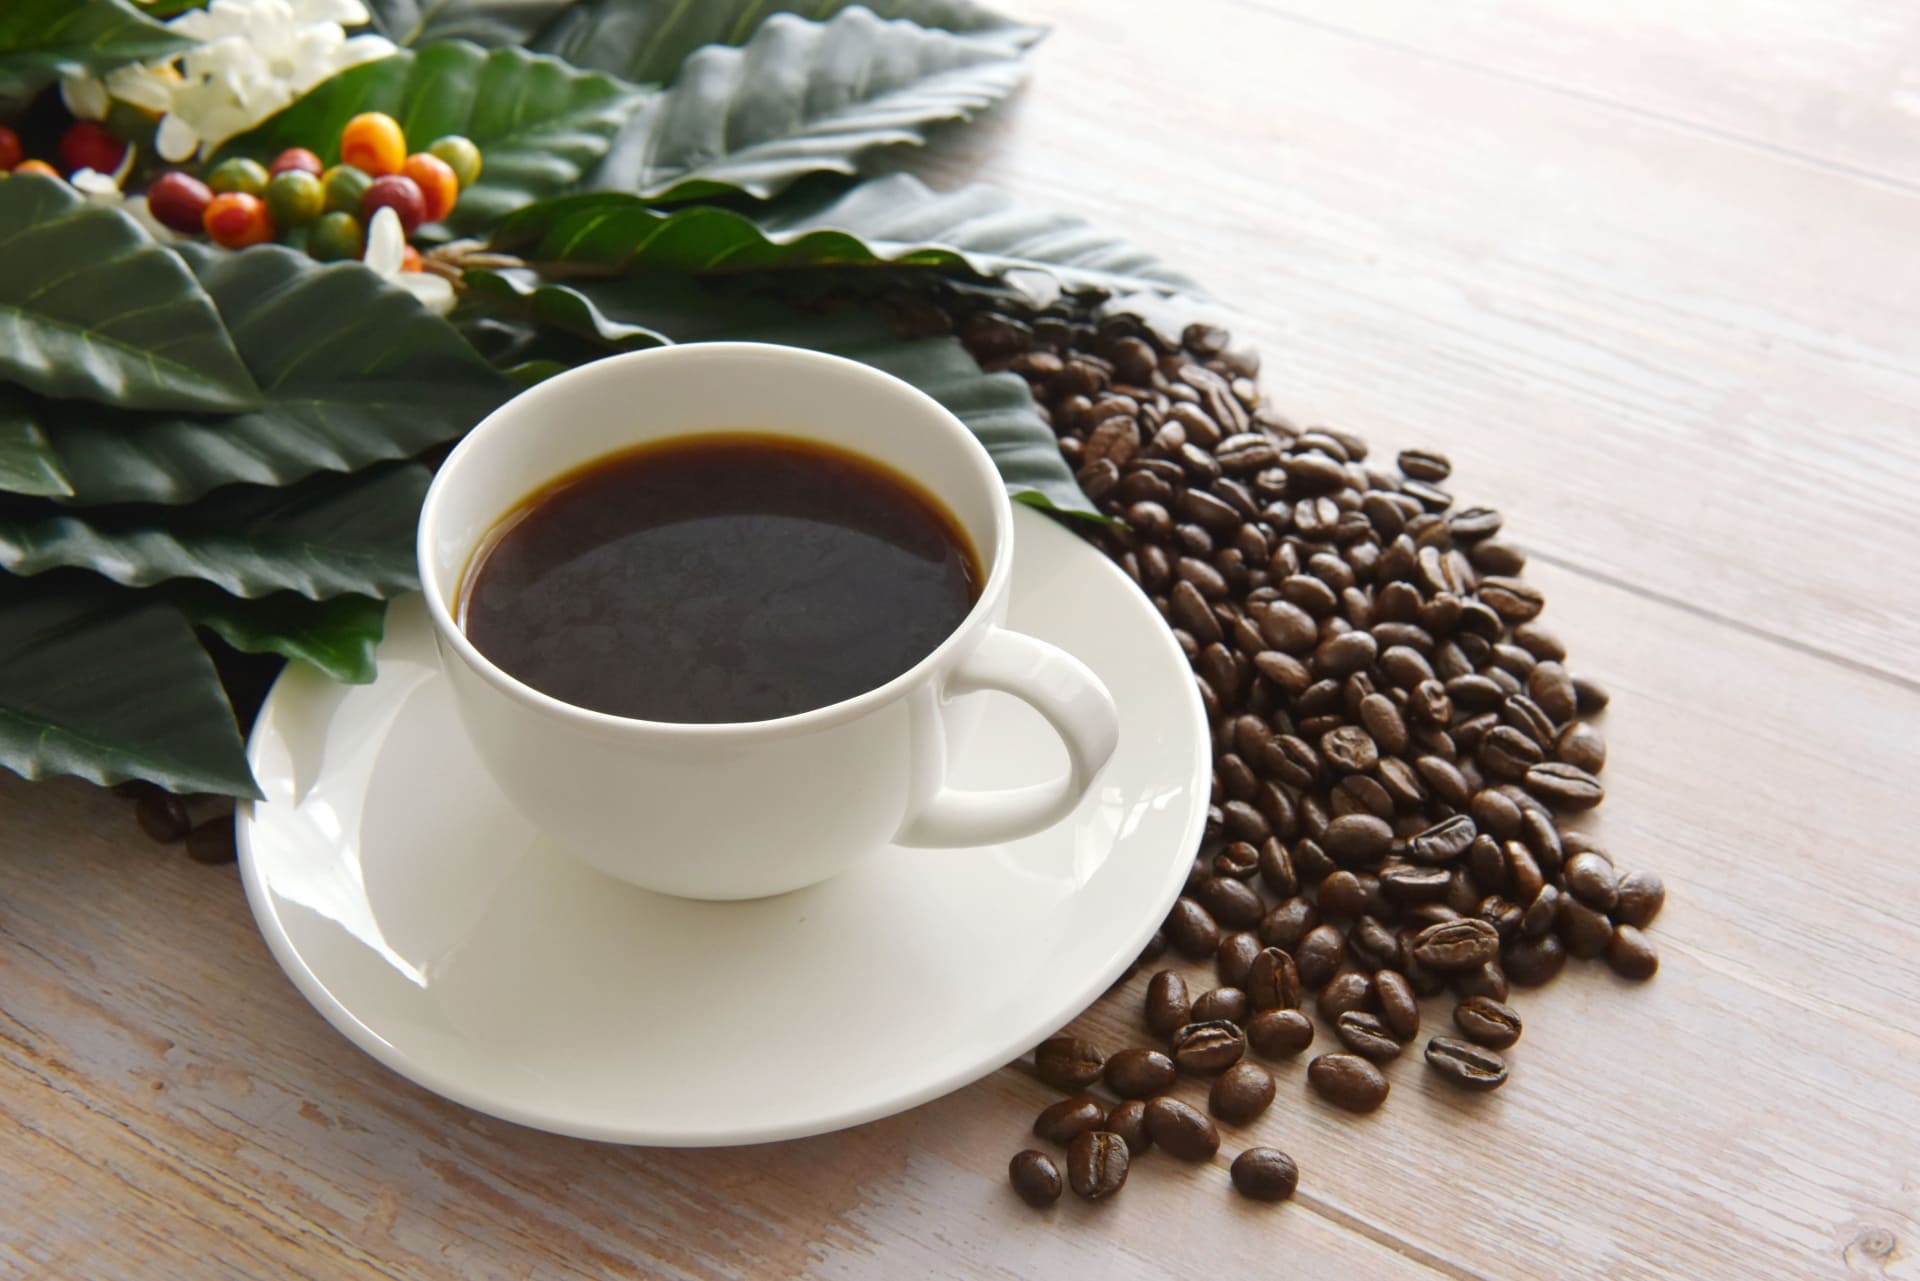 カップに注がれたコーヒーとコーヒー豆とコーヒーの木の葉